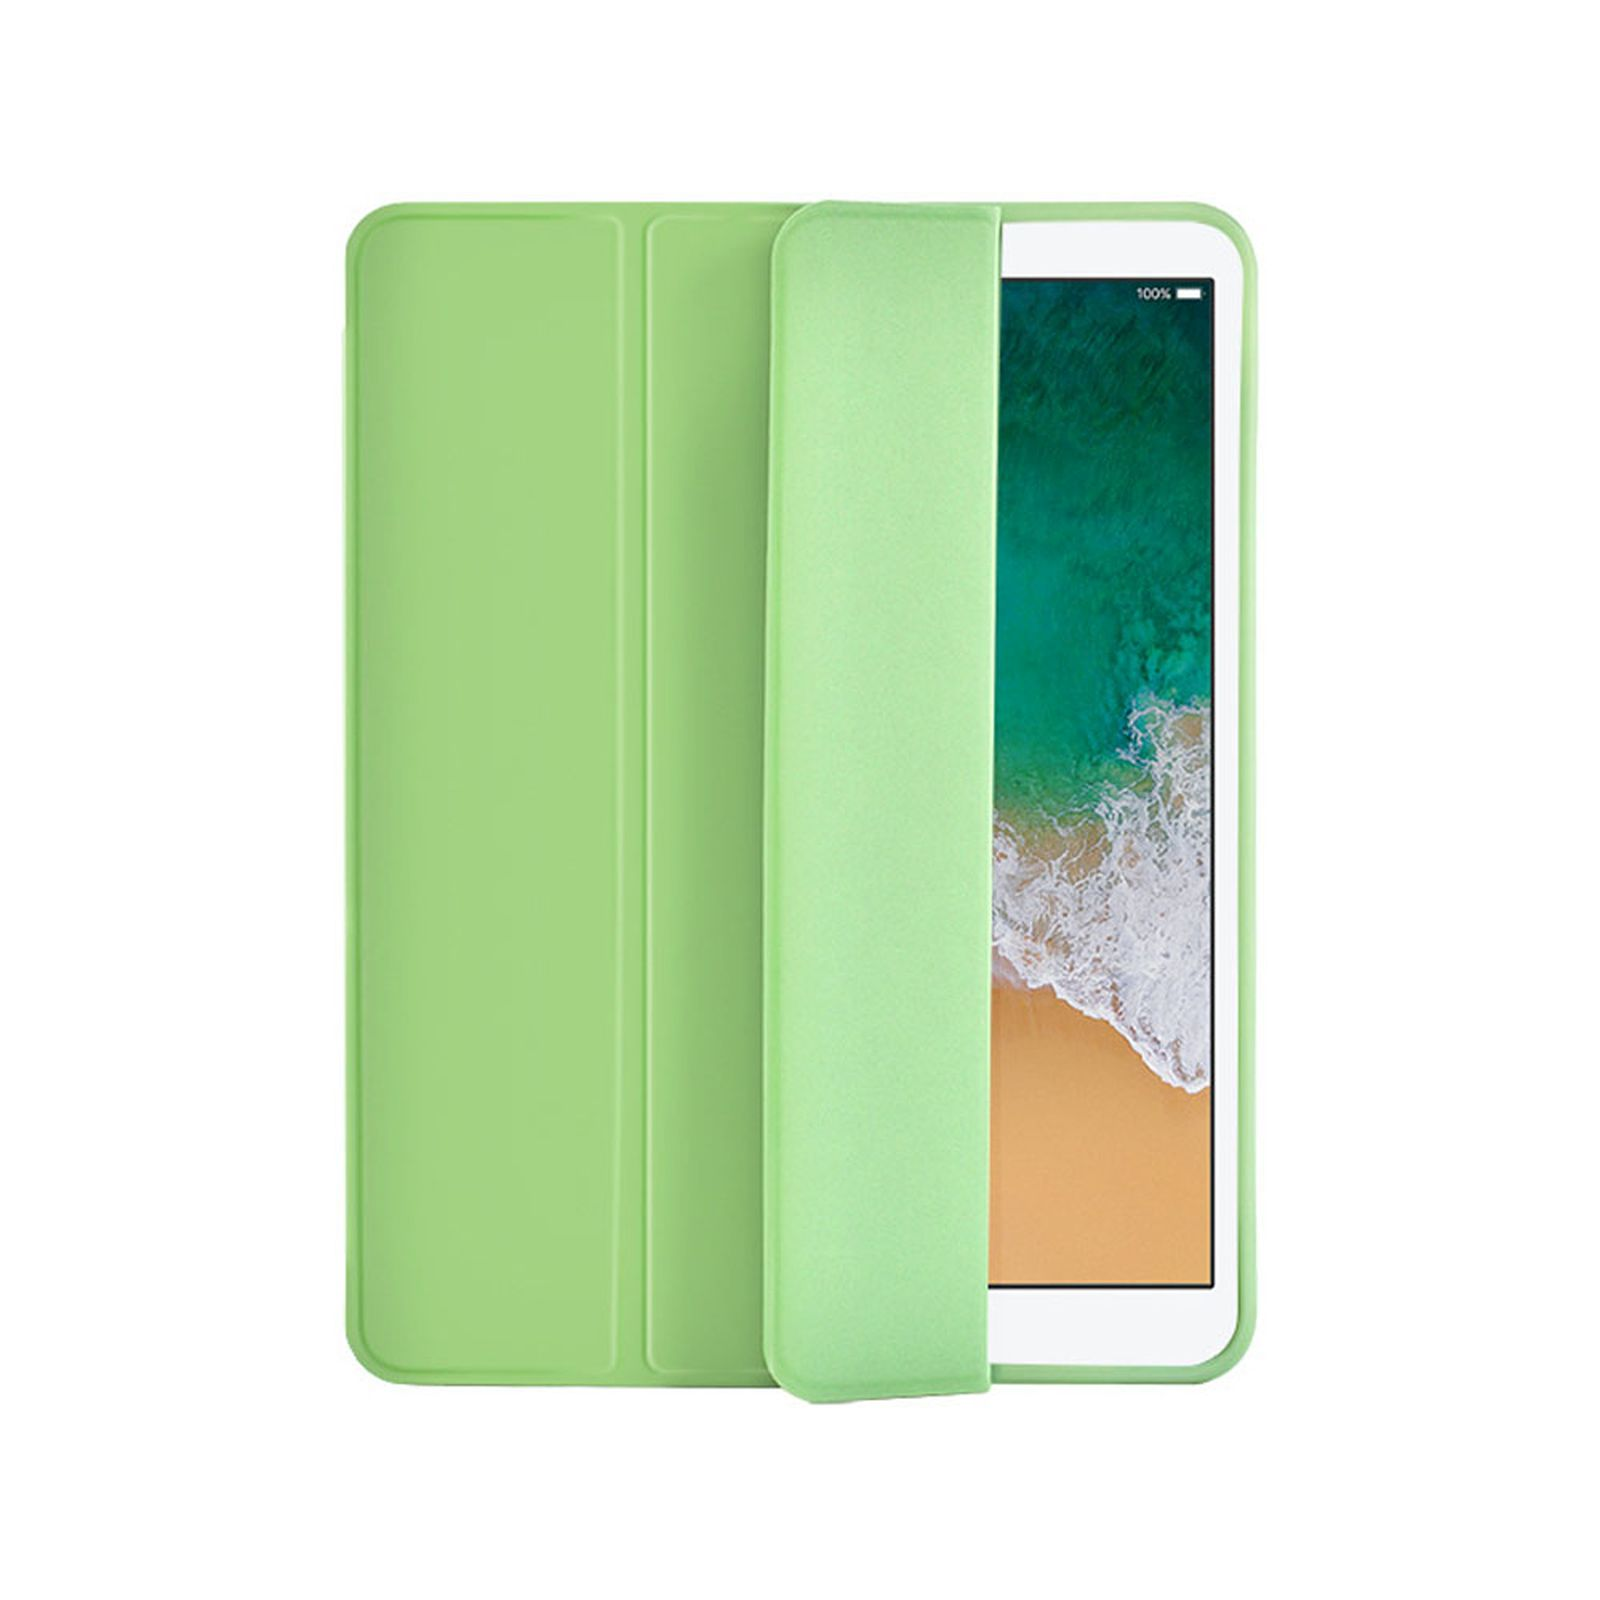 Kunststoff, Pro iPad Grün Schutzhülle Apple 2020 LOBWERK 12.9 Hülle Bookcover für